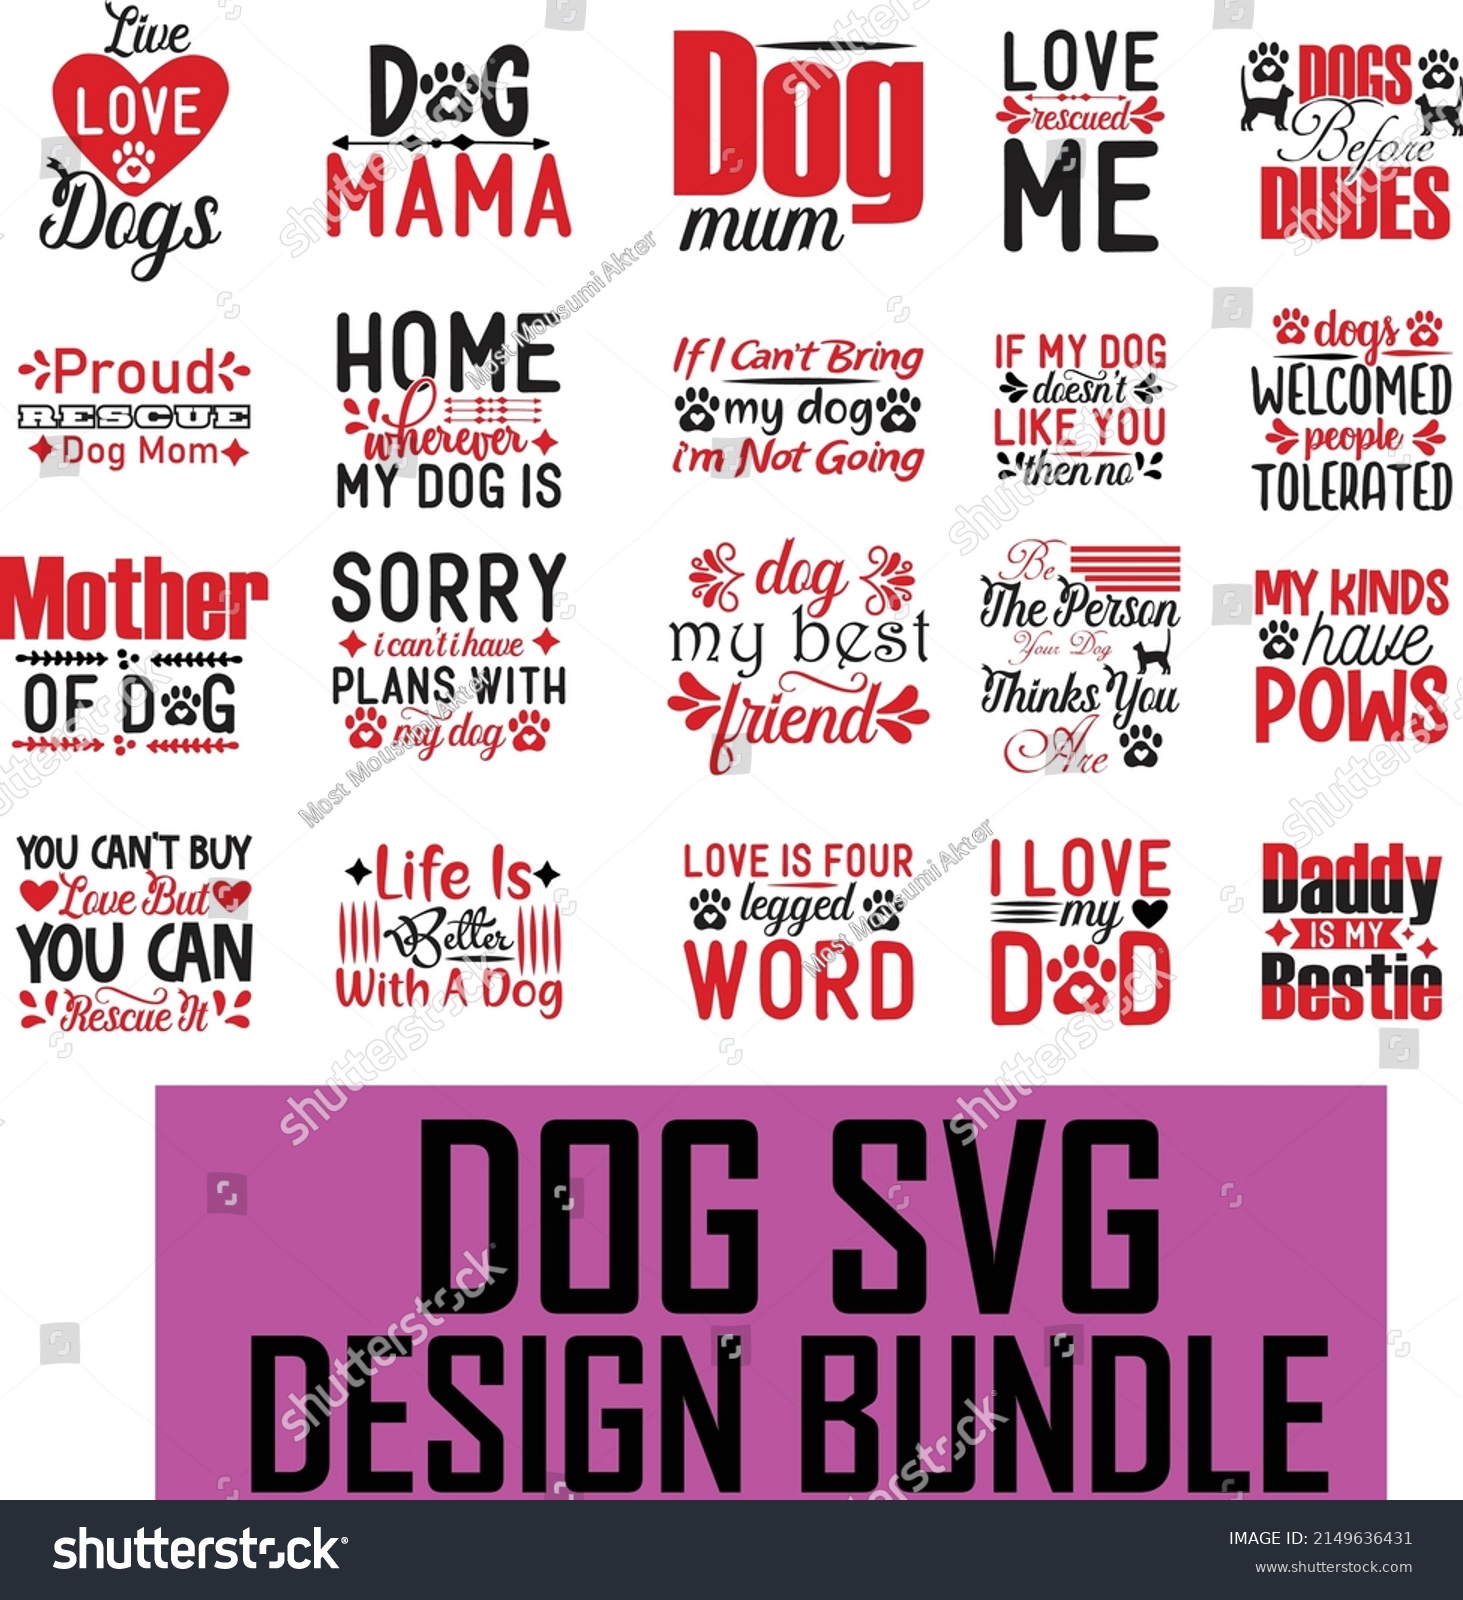 SVG of Dog SVG design bundle. Dog SVG t shirt design. svg